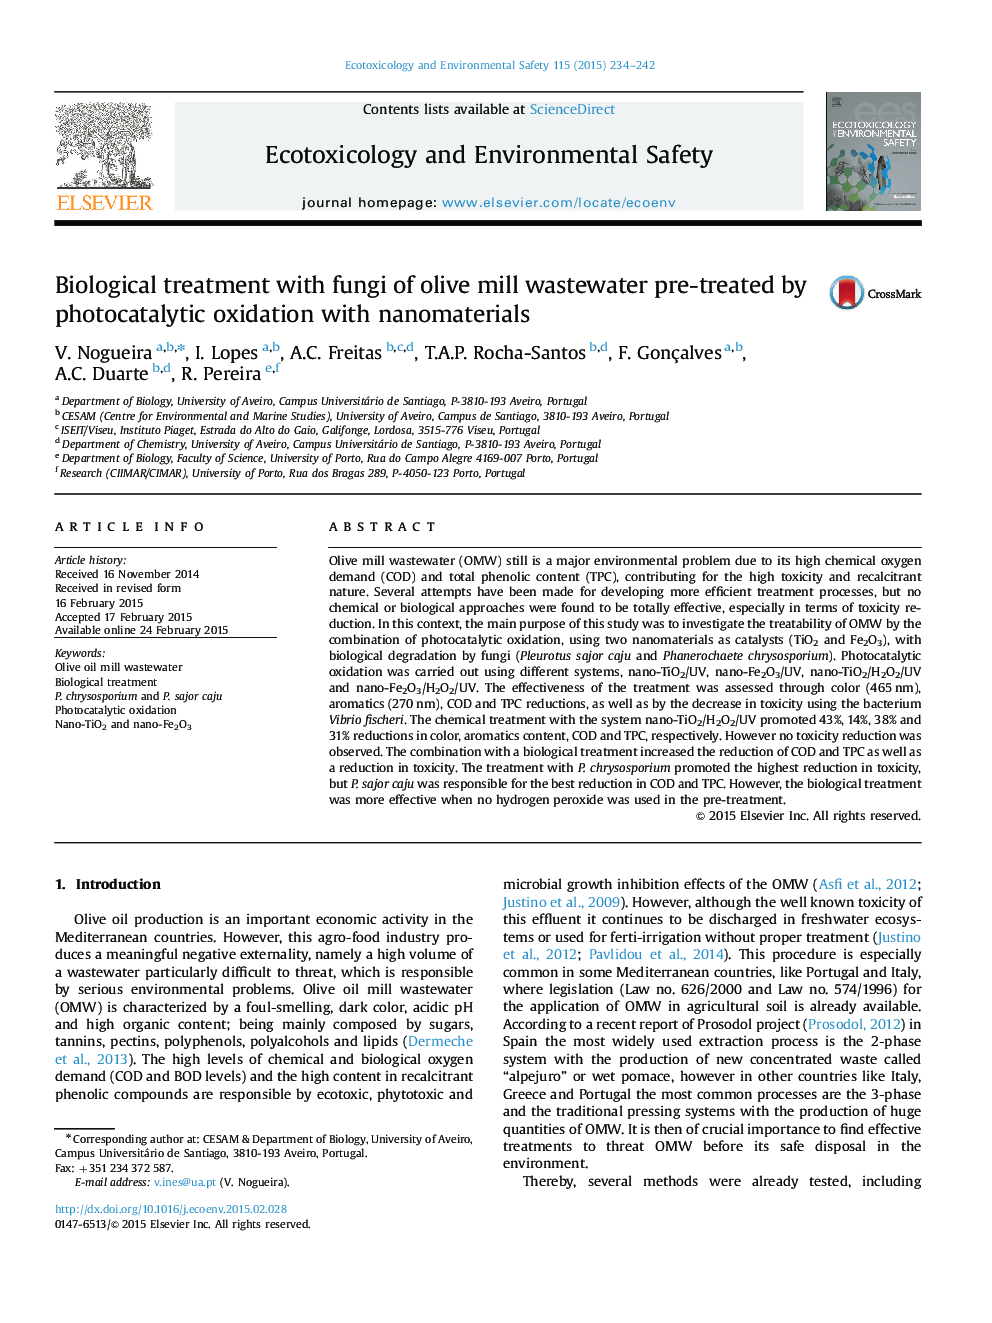 درمان بیولوژیکی با قارچ های فاضلاب آسیاب زیتون پیش از درمان با اکسیداسیون فتوکاتالیتی با استفاده از نانومواد 